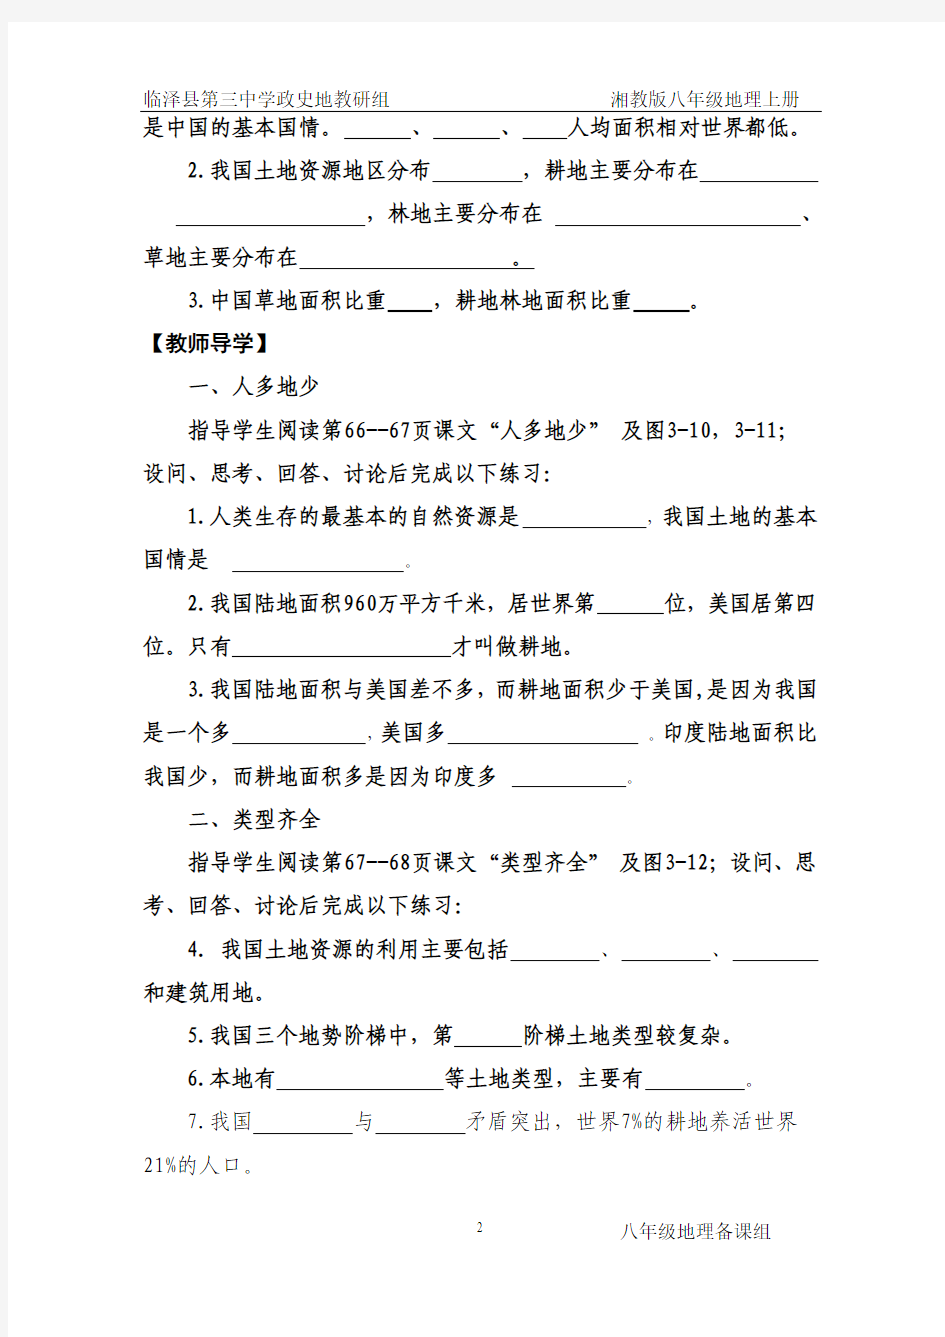 三备刘登峰第三章 第二节中国的土地资源(两课时)Microsoft Word 文档